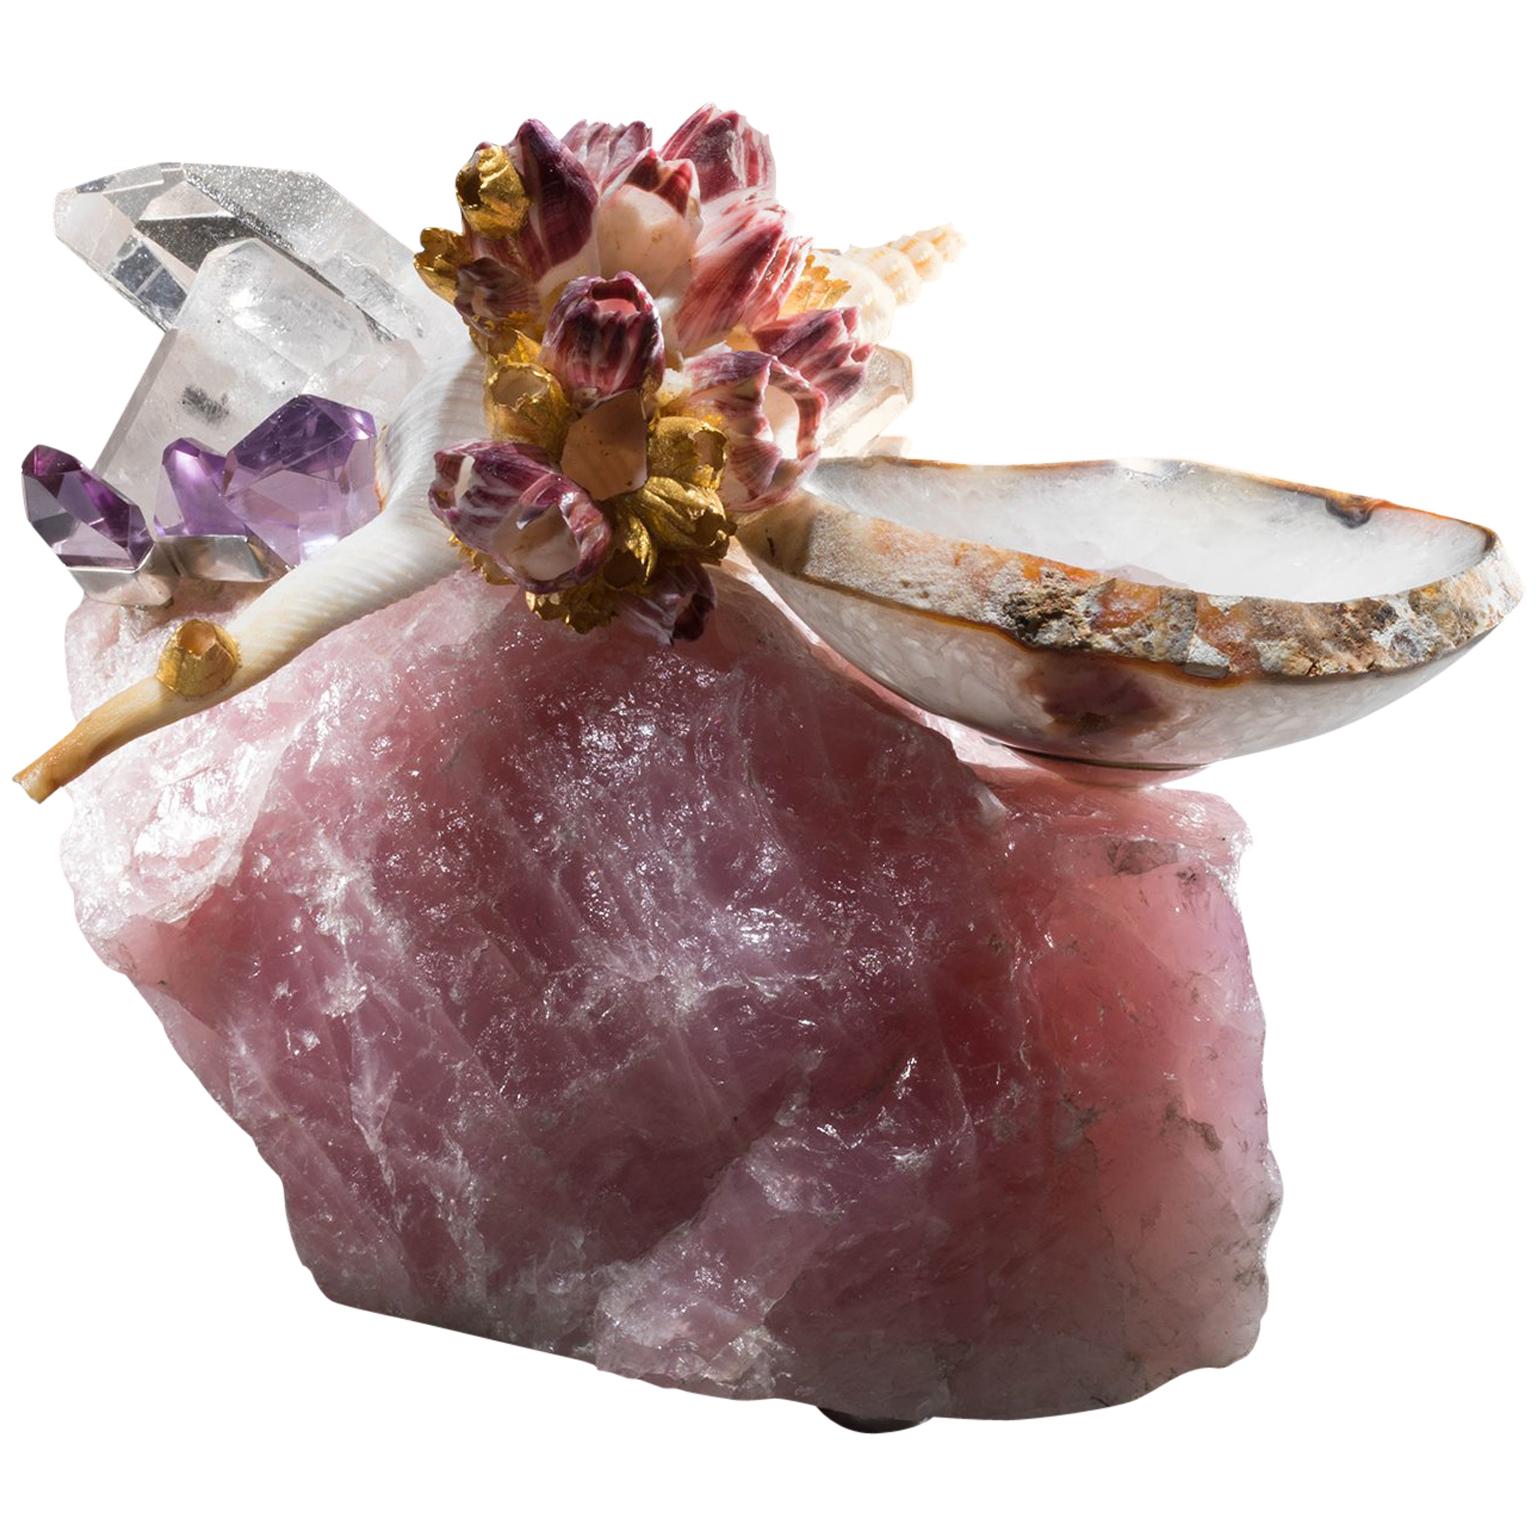 Studio Greytak 'Bling Bowl 2' Brazilian Agate Bowl, Crystals, Shells & Amethyst